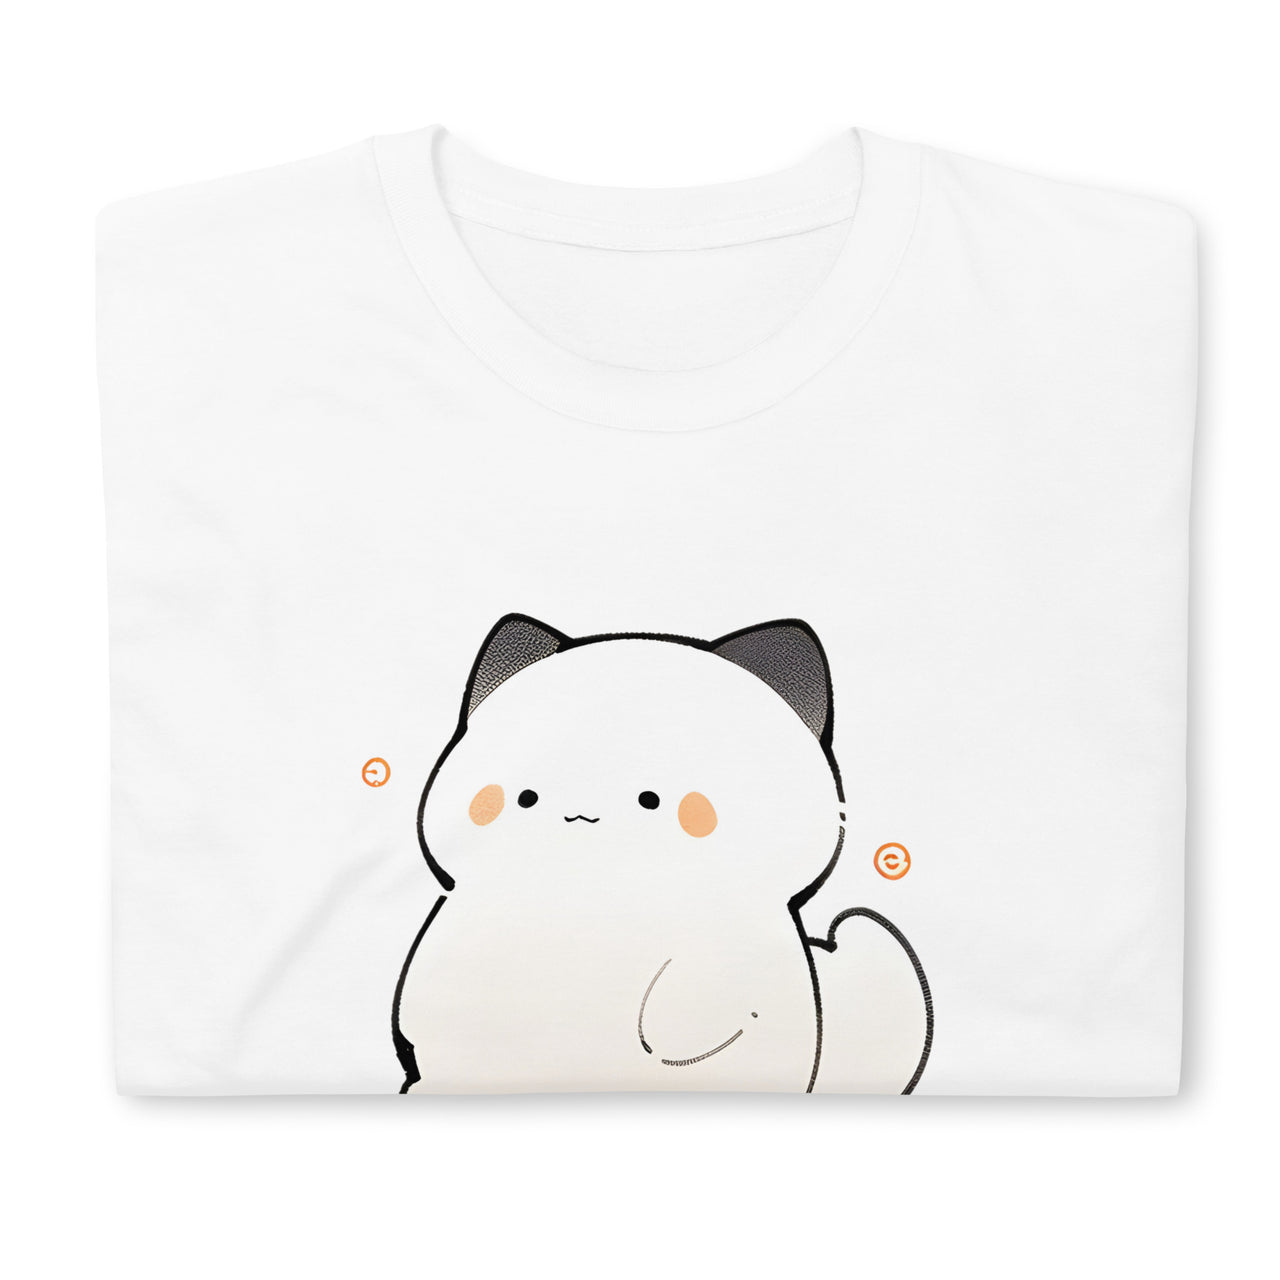 bongo cat in a bag  Roblox shirt, Roblox t shirts, Roblox t-shirt